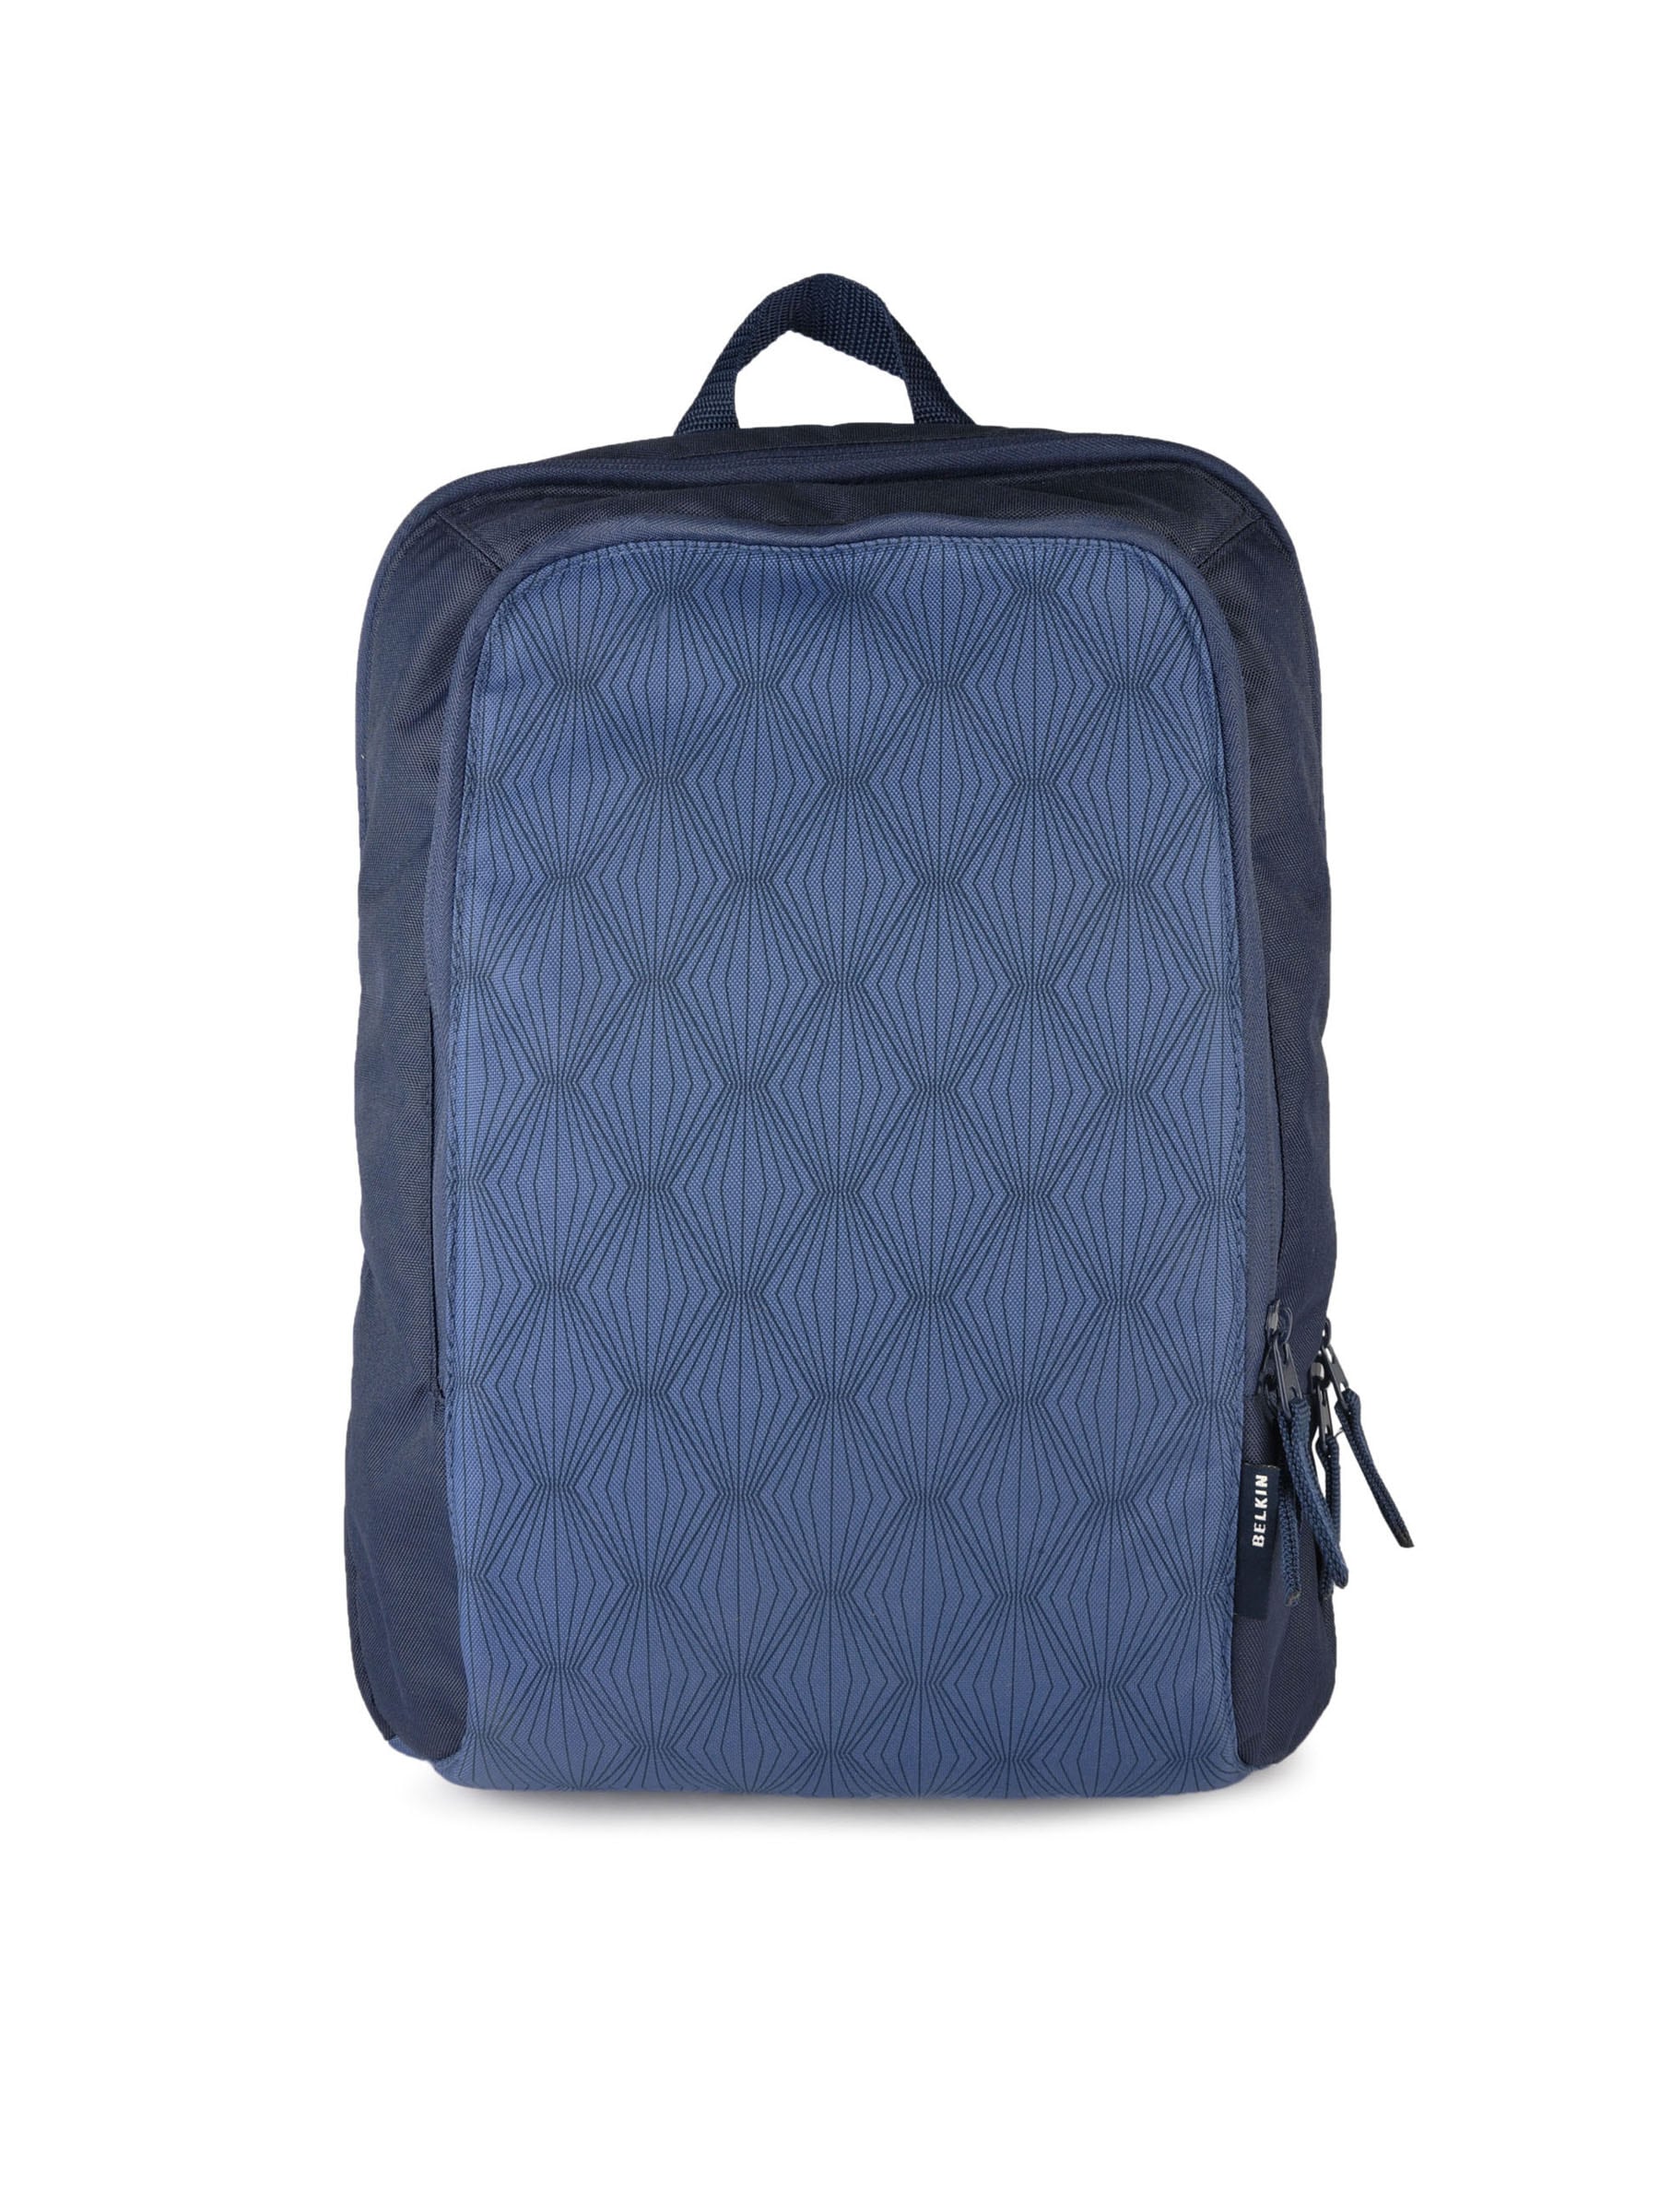 Belkin Unisex Simple Backpack Navy Blue Backpacks